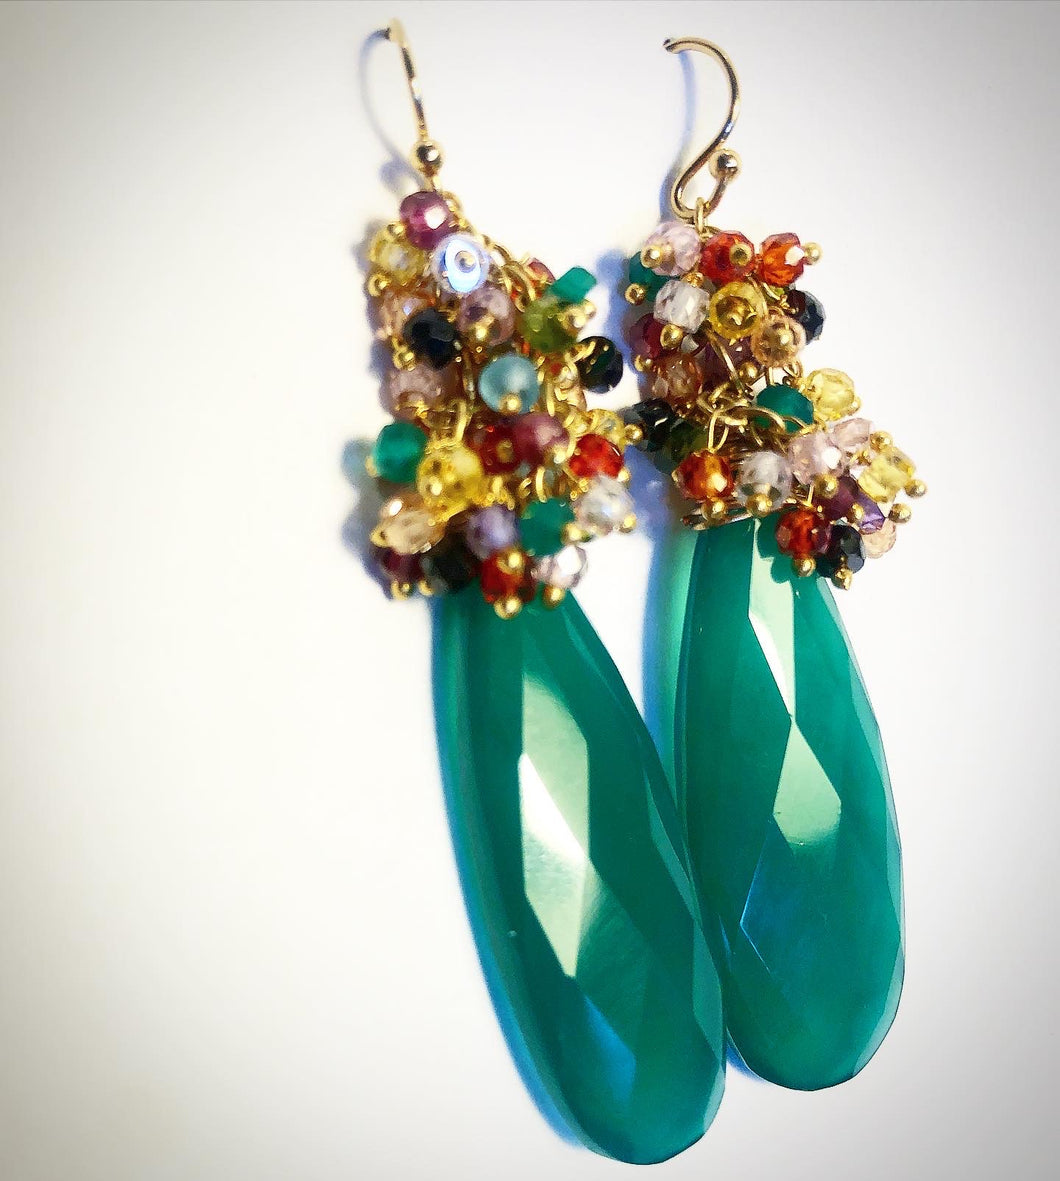 Emerald Green Festival earrings